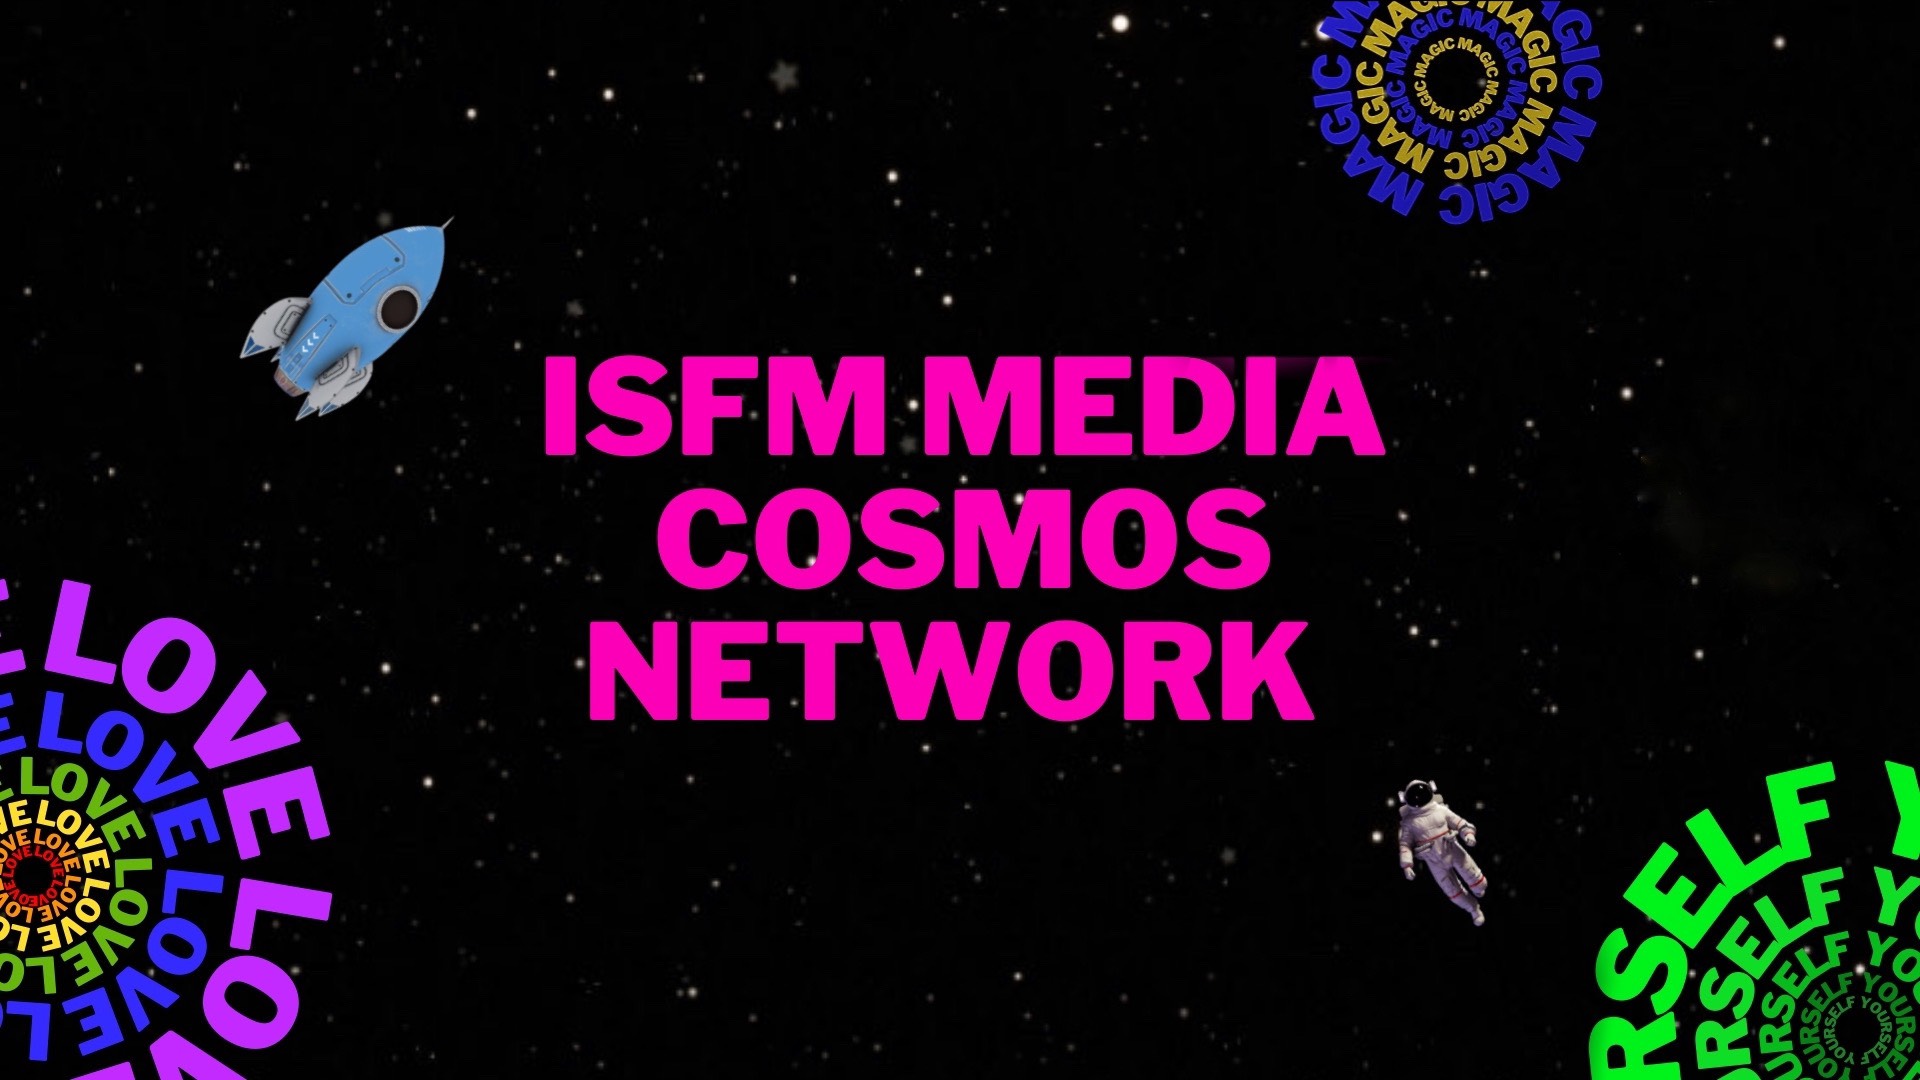 Câu lạc bộ truyền thông IMCN - ISFM Media Cosmos Network